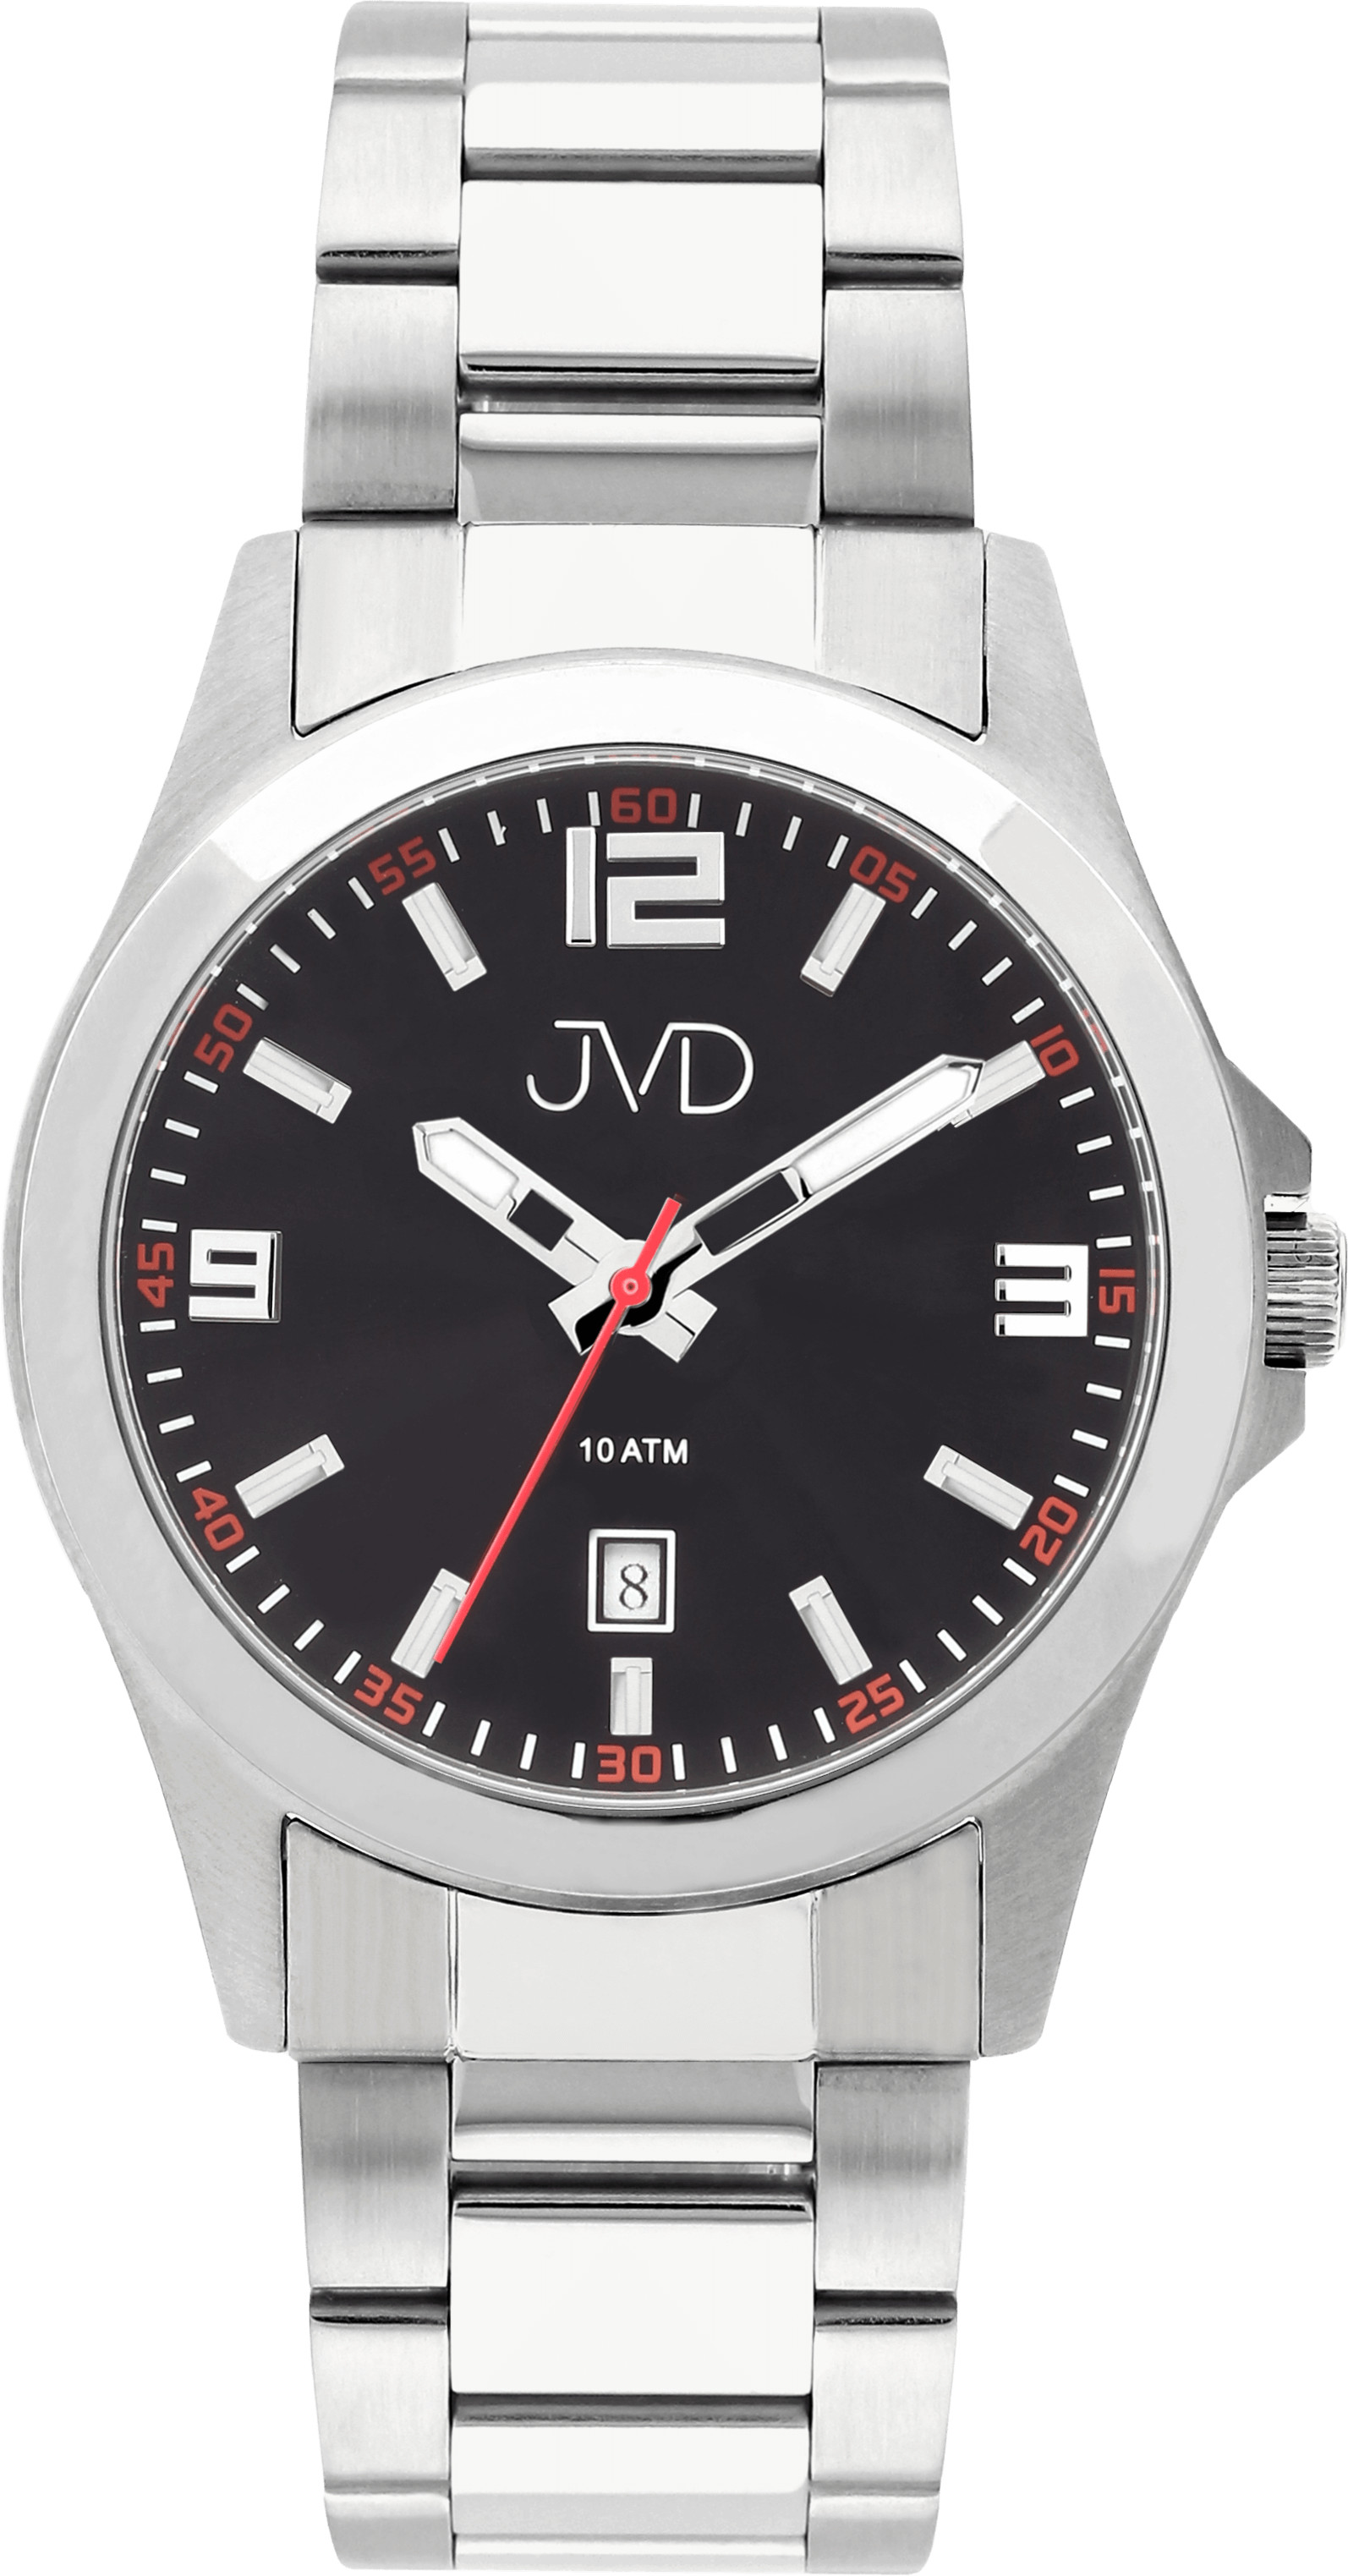 JVD Analogové hodinky J1041.31